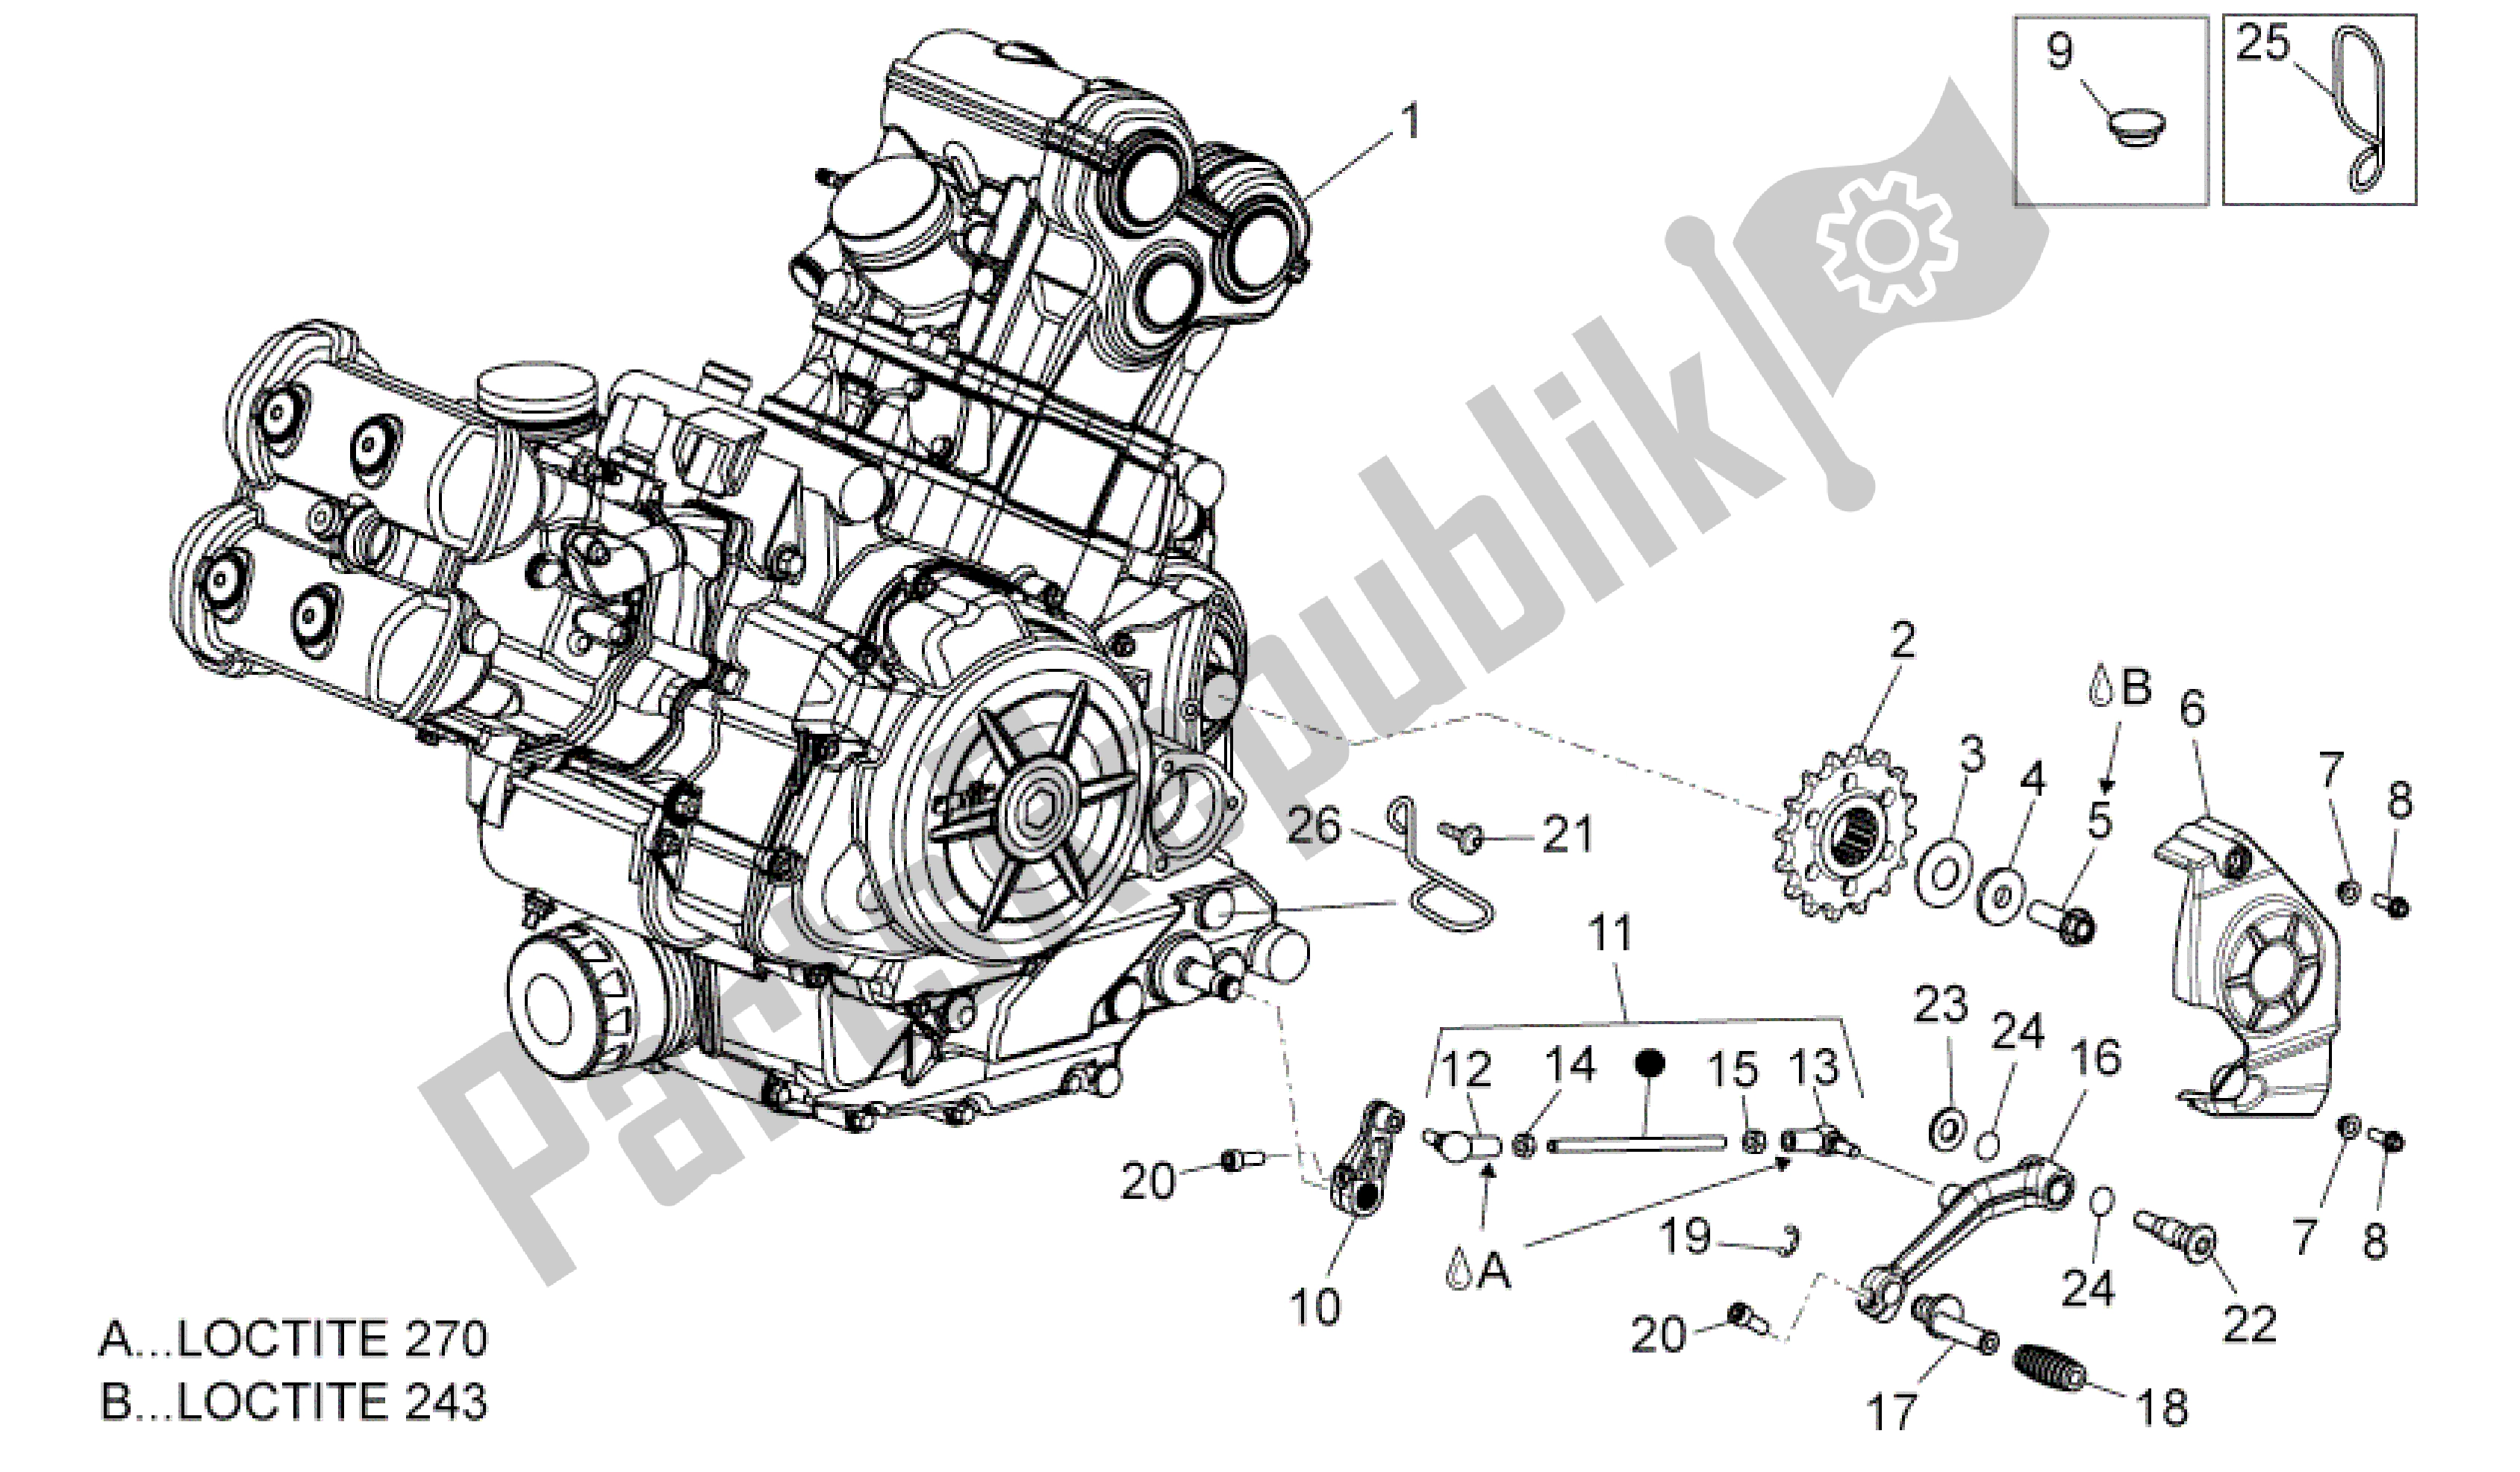 Todas las partes para Motor de Aprilia Dorsoduro 1200 2010 - 2013